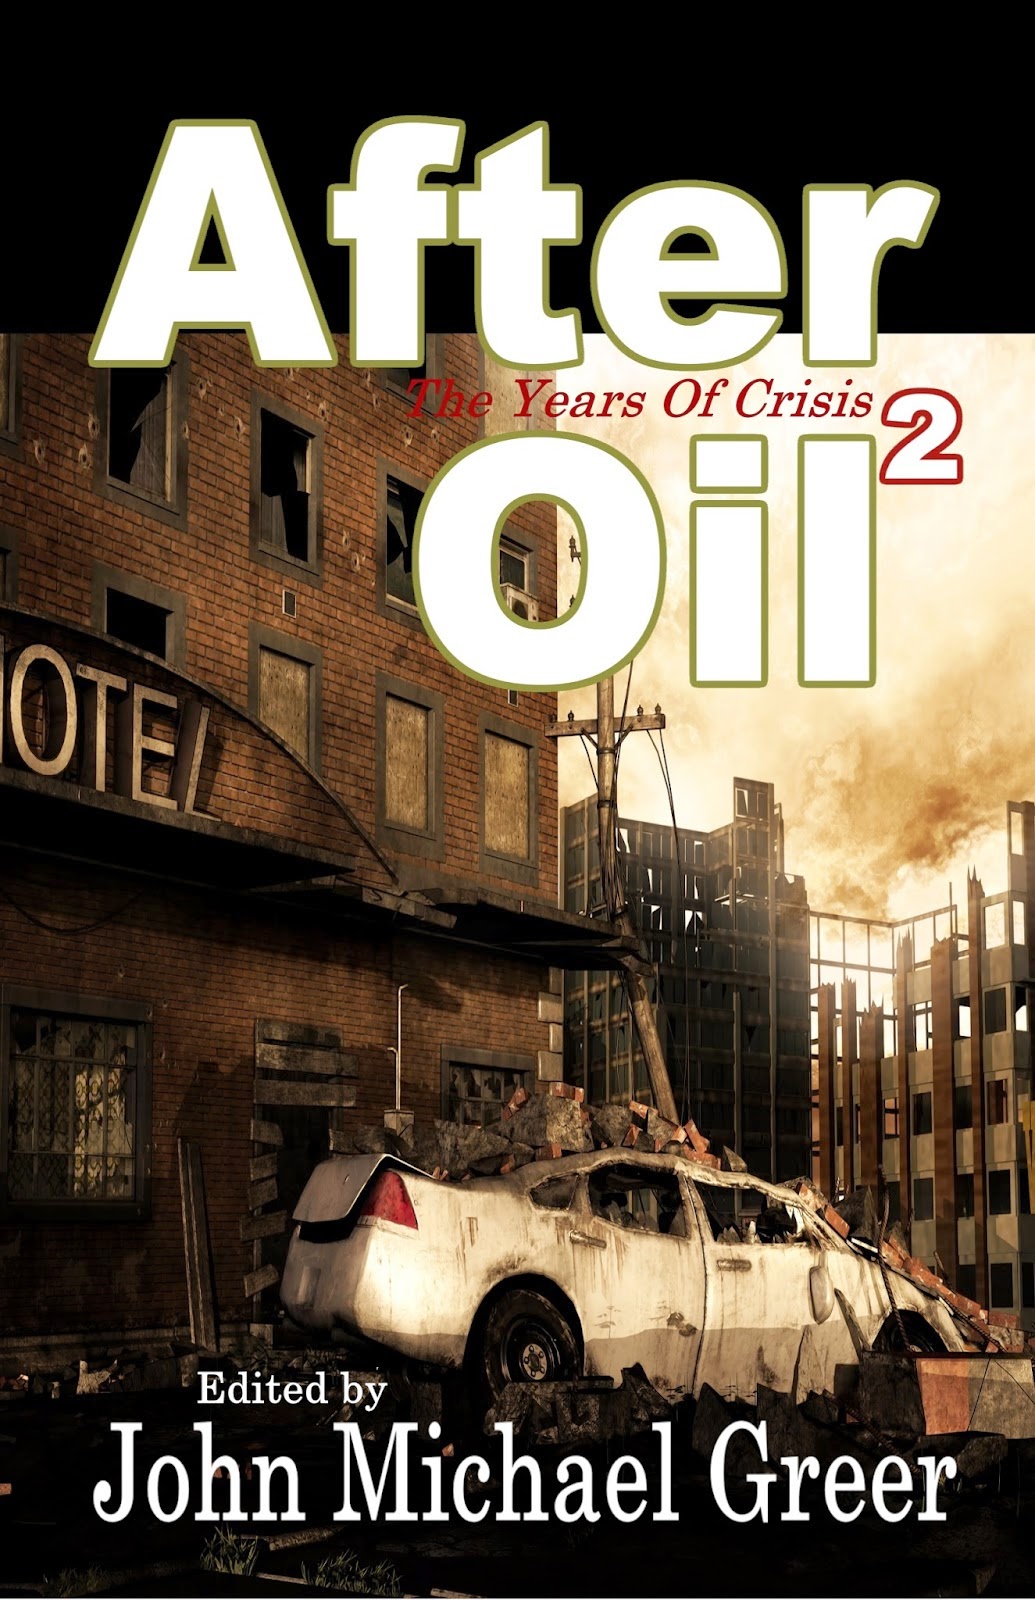 After Oil 2 Anthology